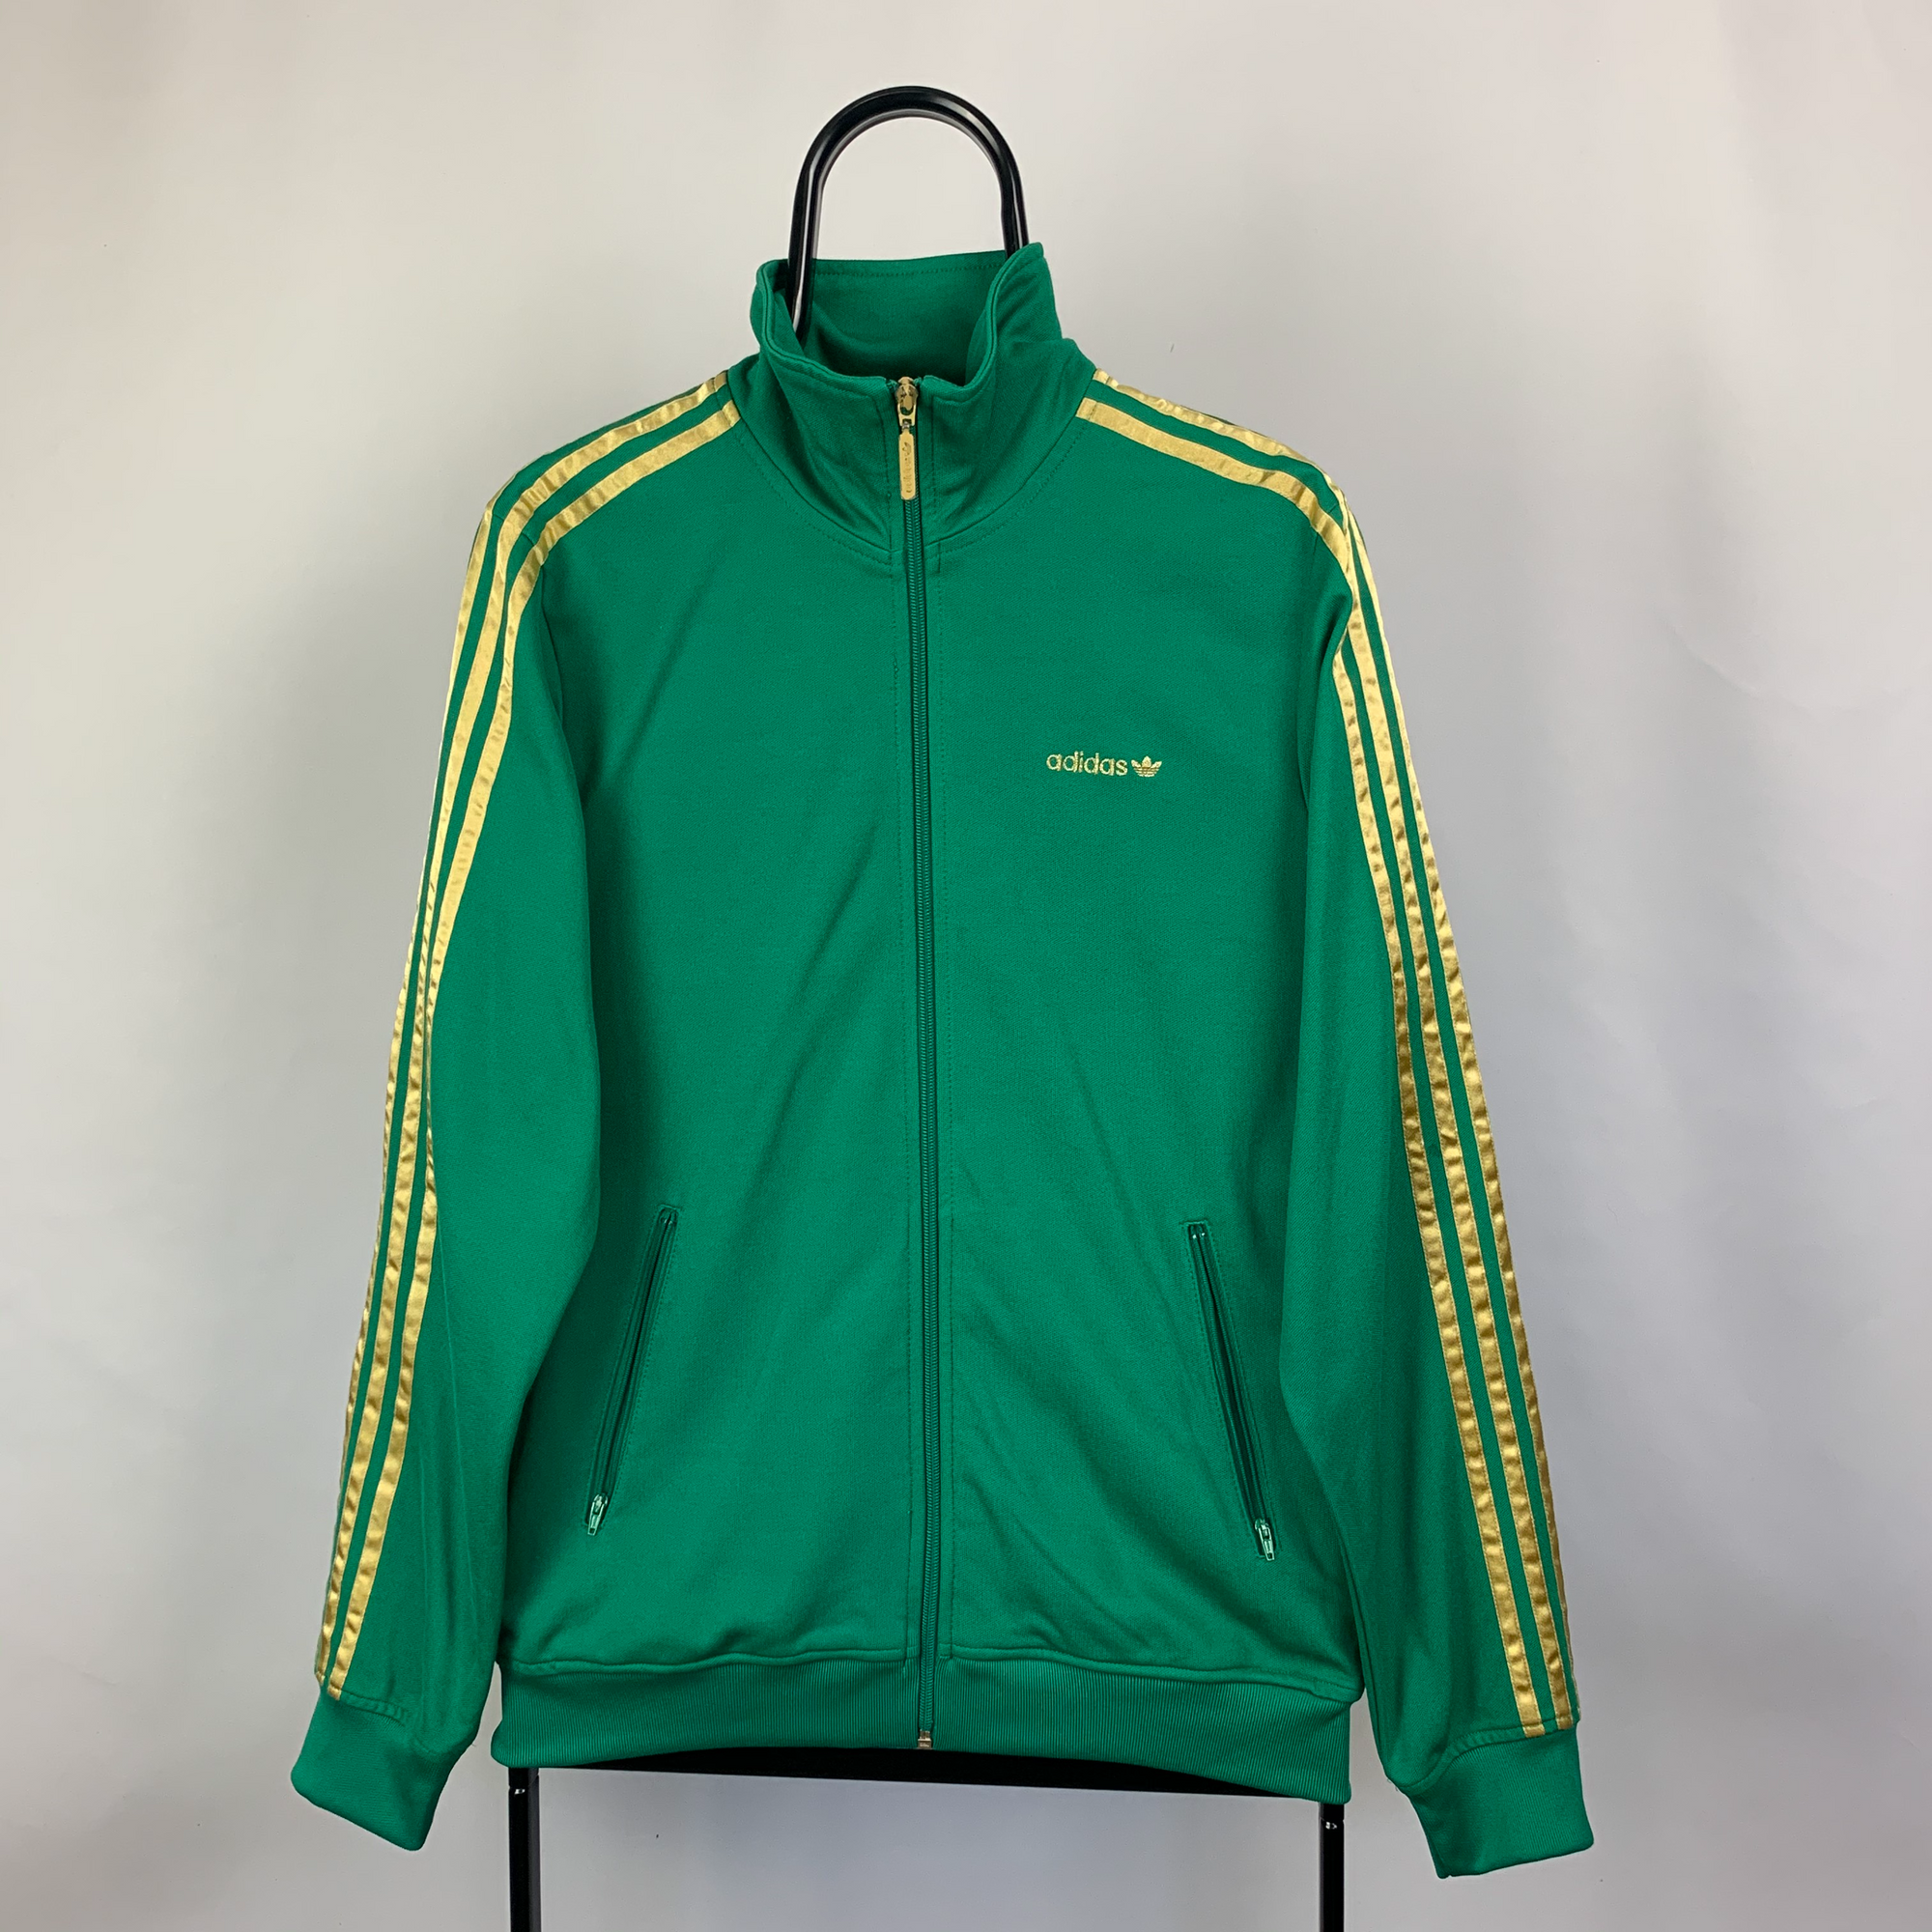 Vintage Adidas Track Jacket in Green - Men's Small/Women's Medium